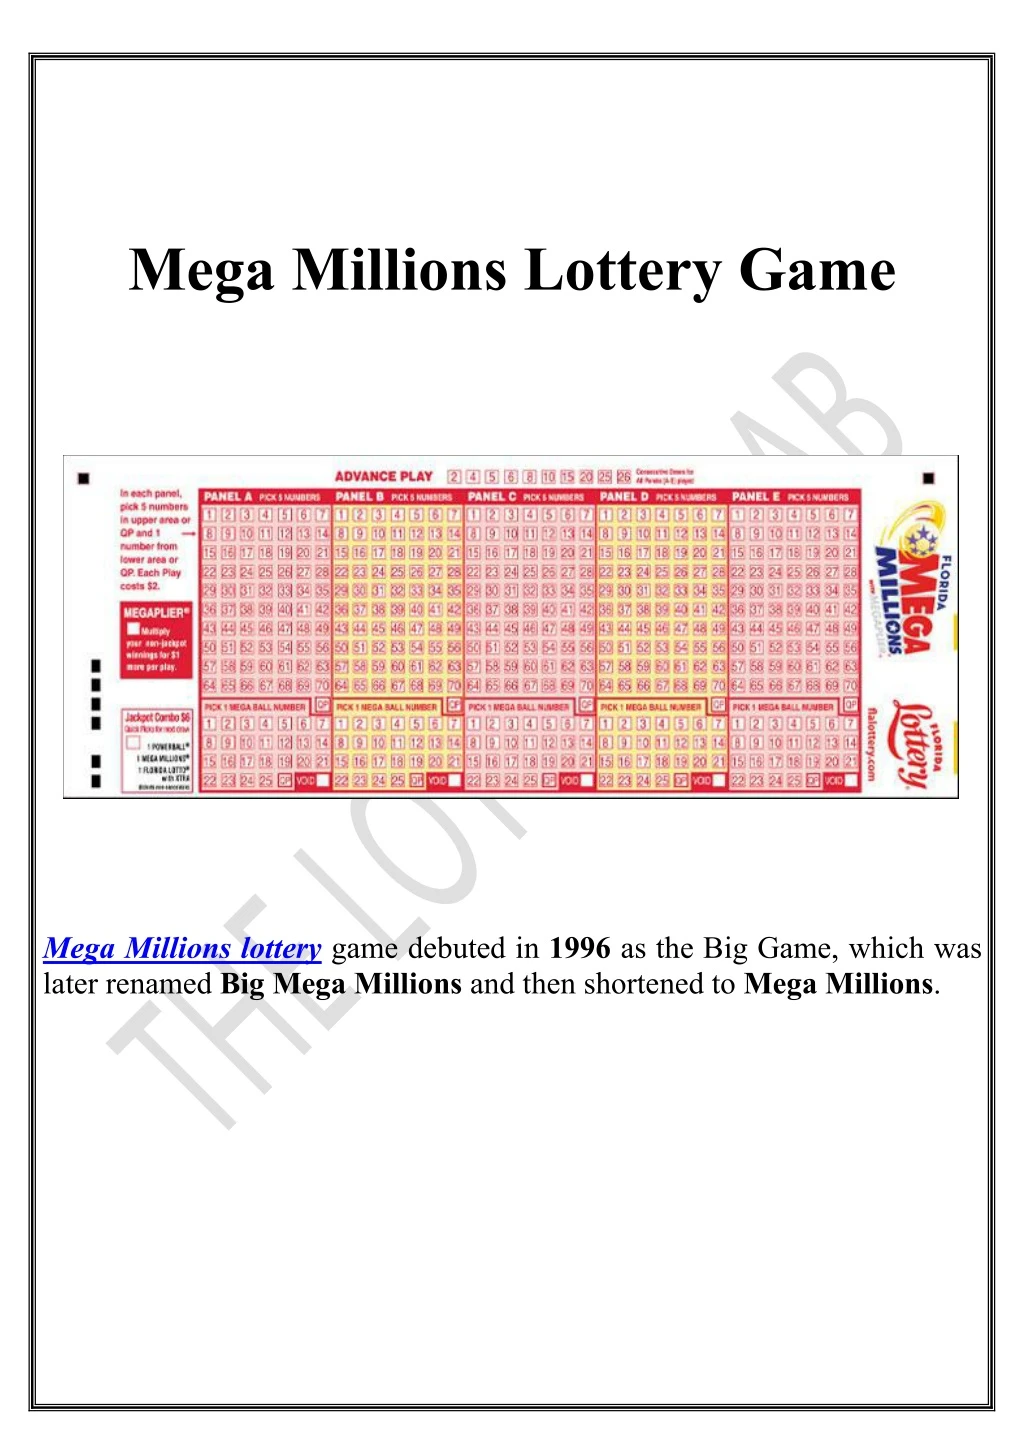 mega millions lottery game